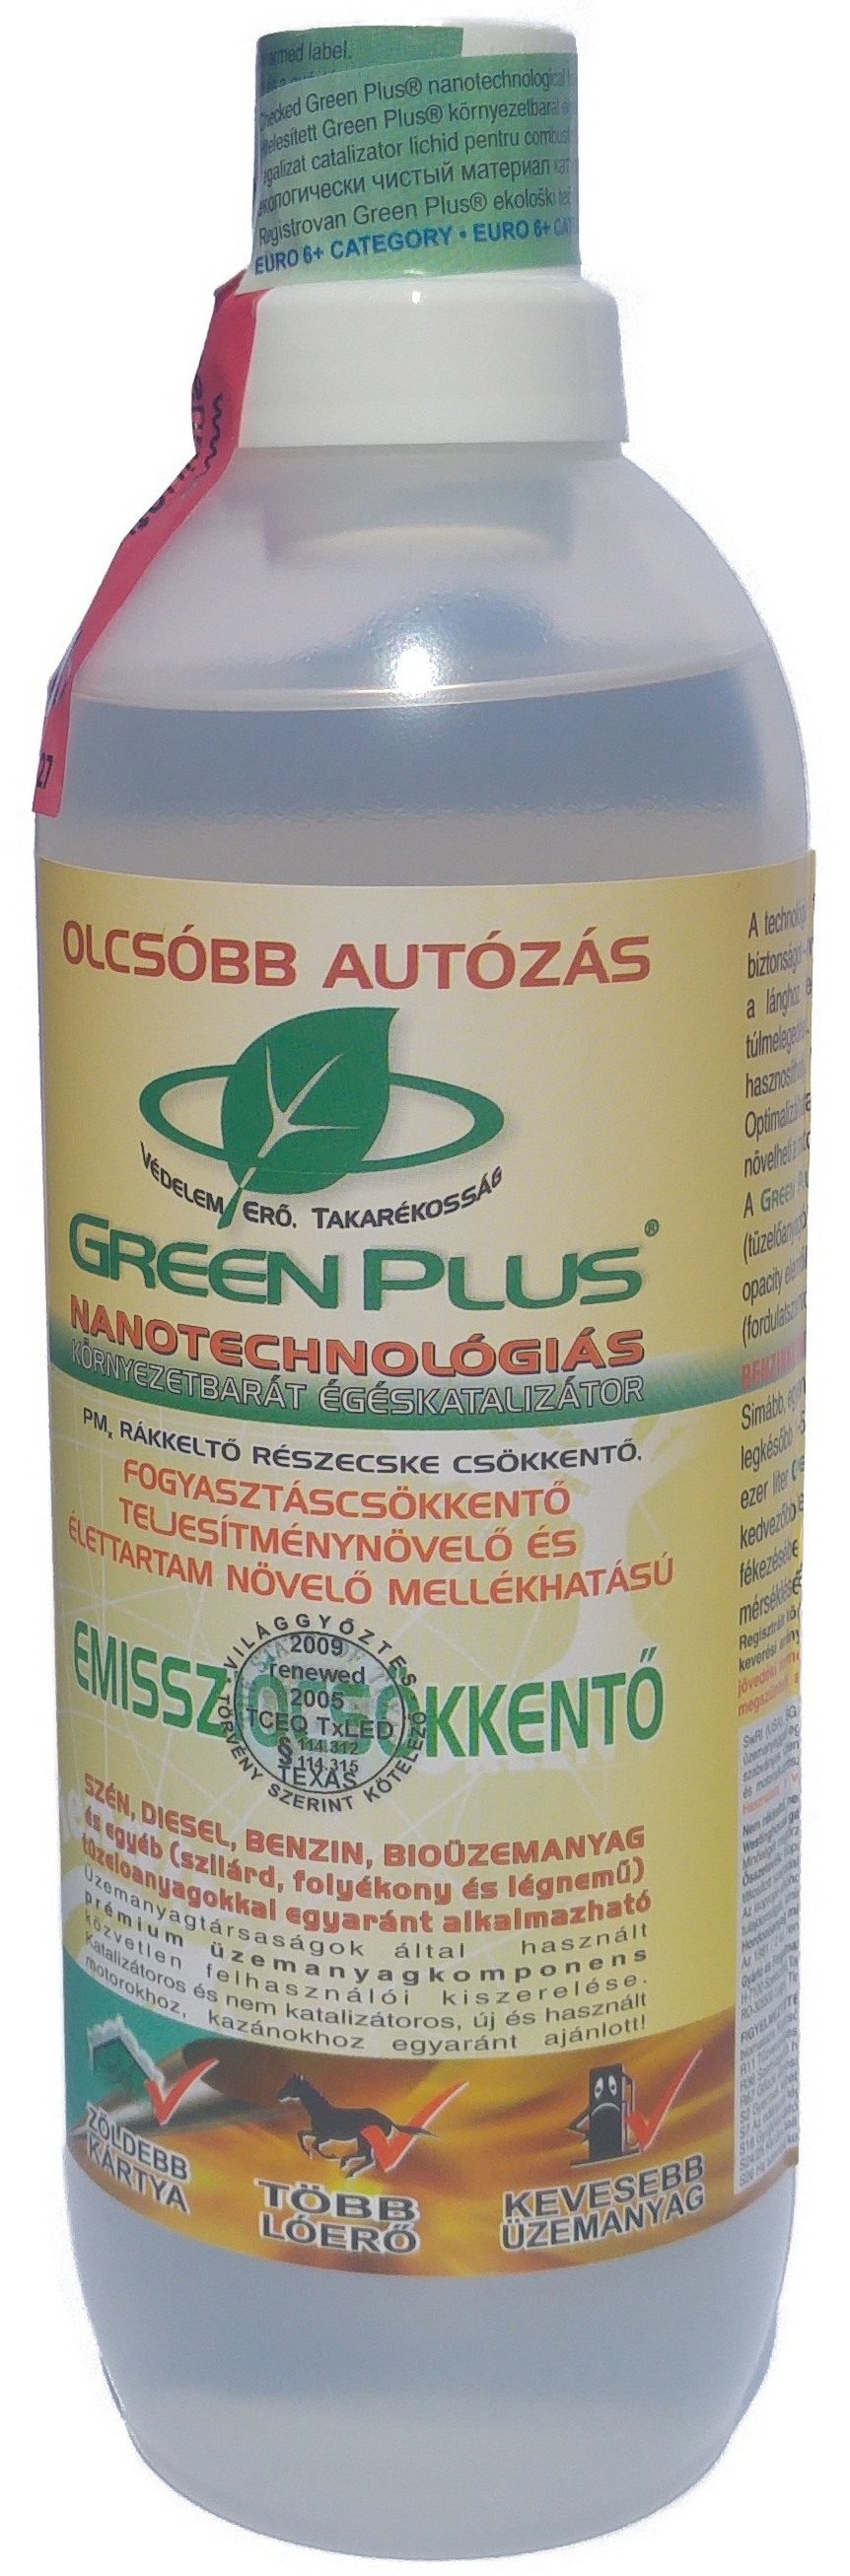 Green Plus környezetbarát folyékony égéskatalizátor